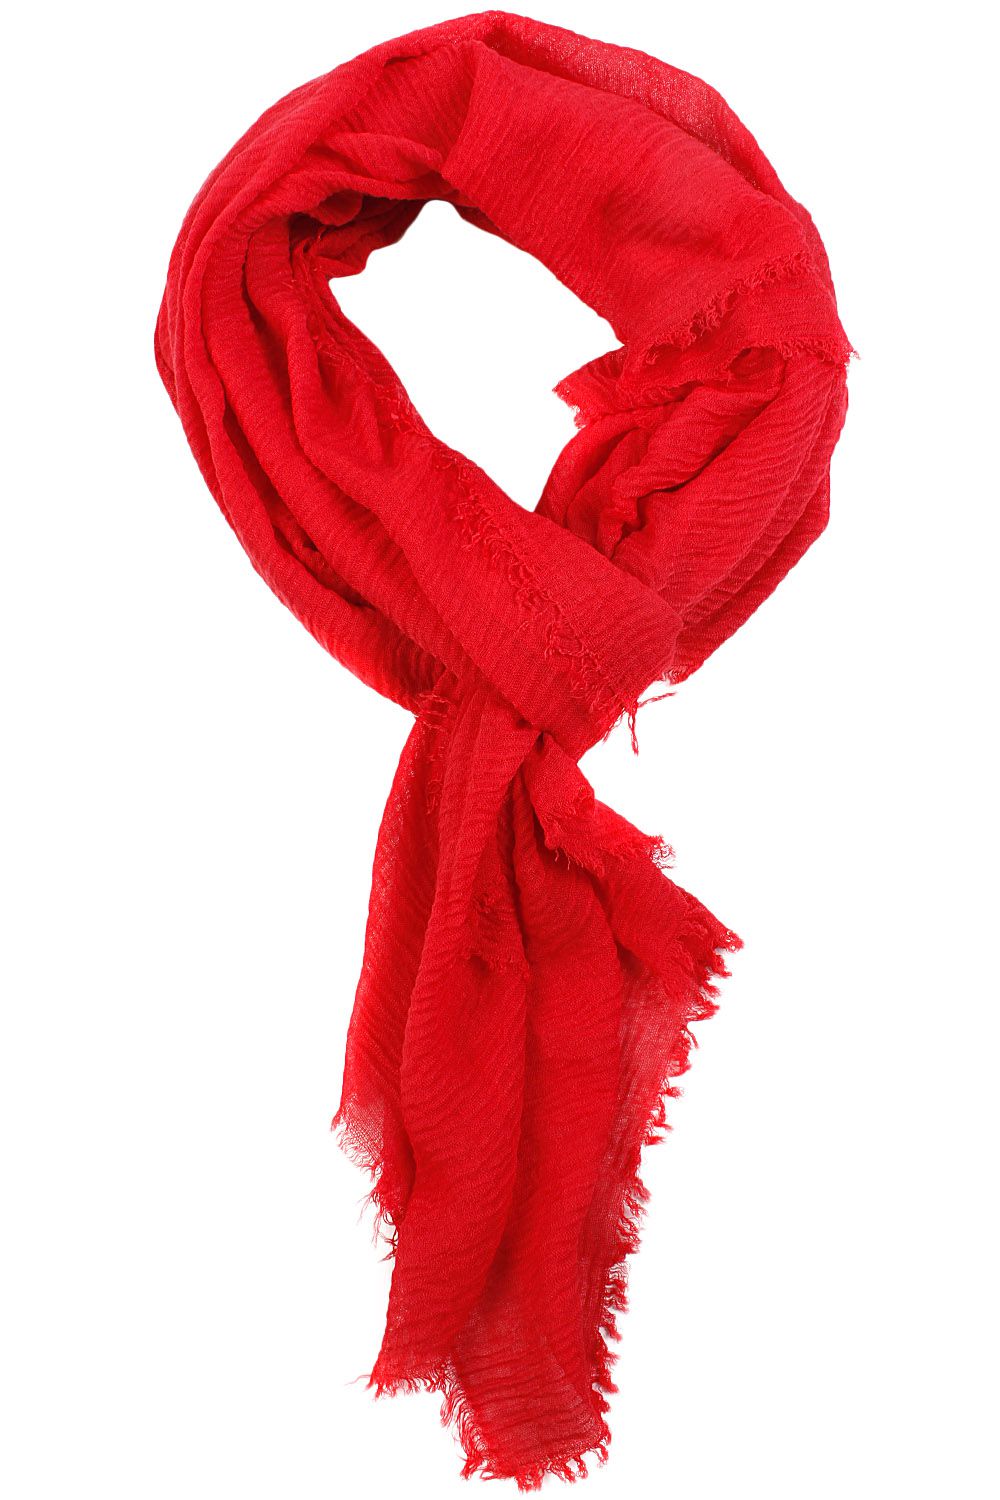 Шарфы заказать. Шарф. Шарф красный. Красный шарф женский. Девочка с красным шарфом.